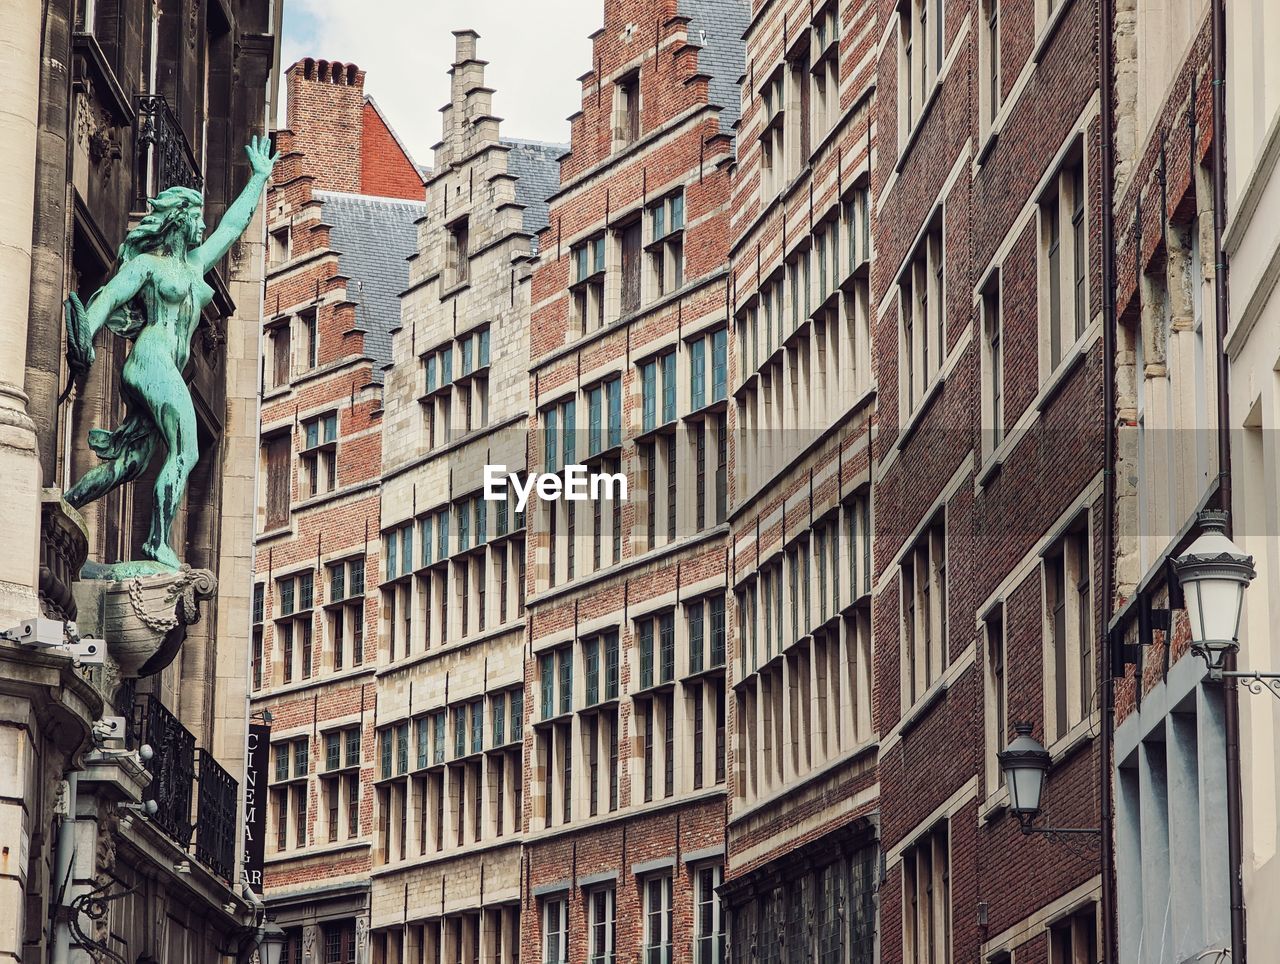 Antwerp facades